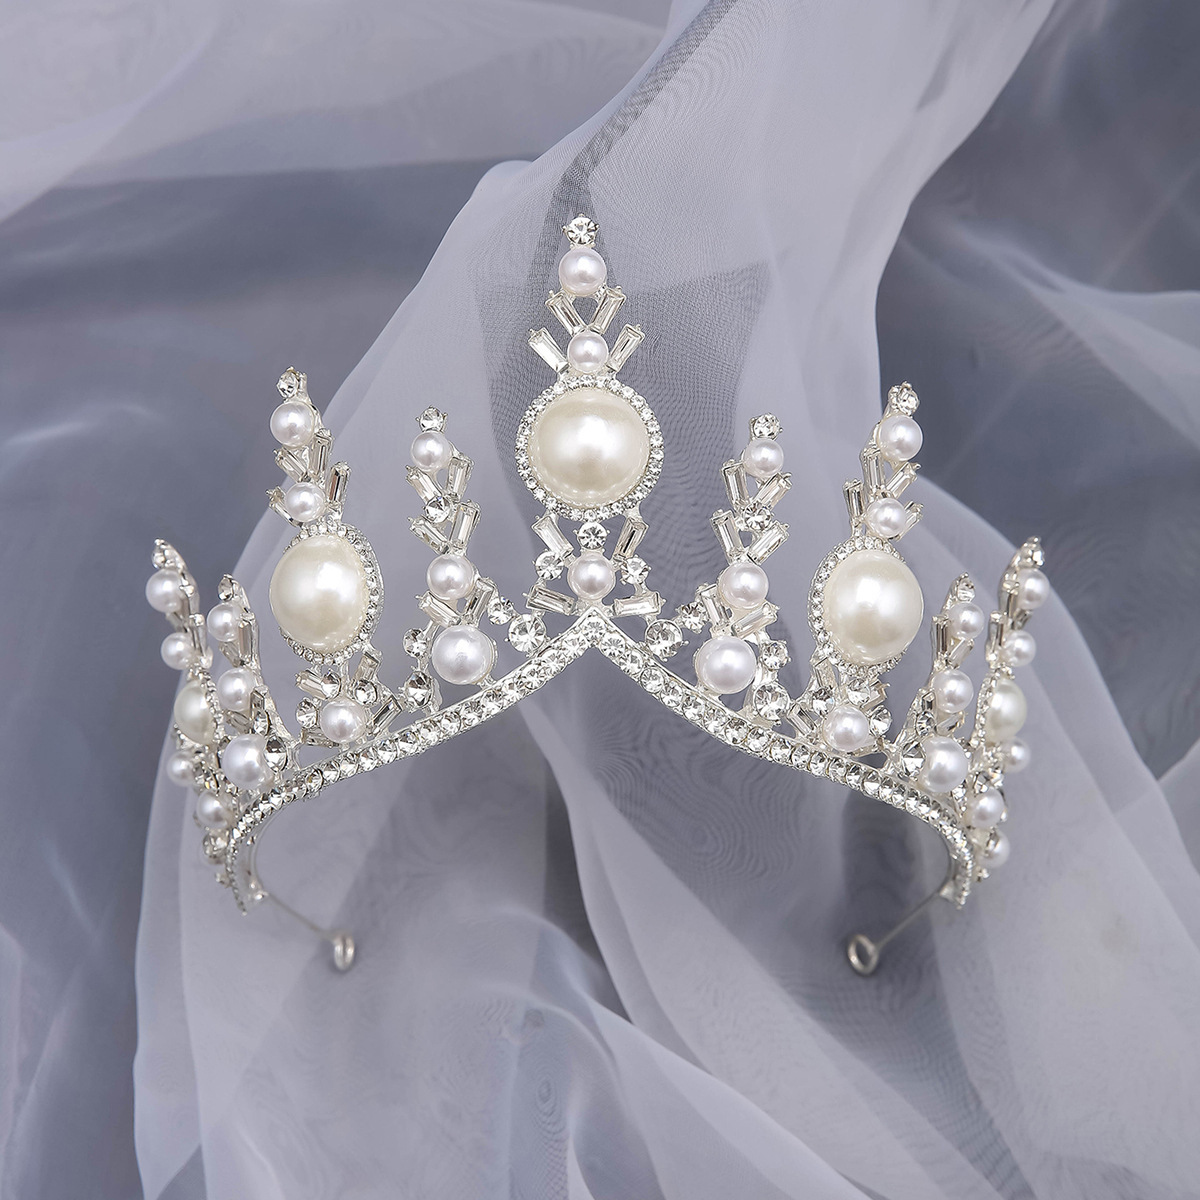 Princess pearl tiara